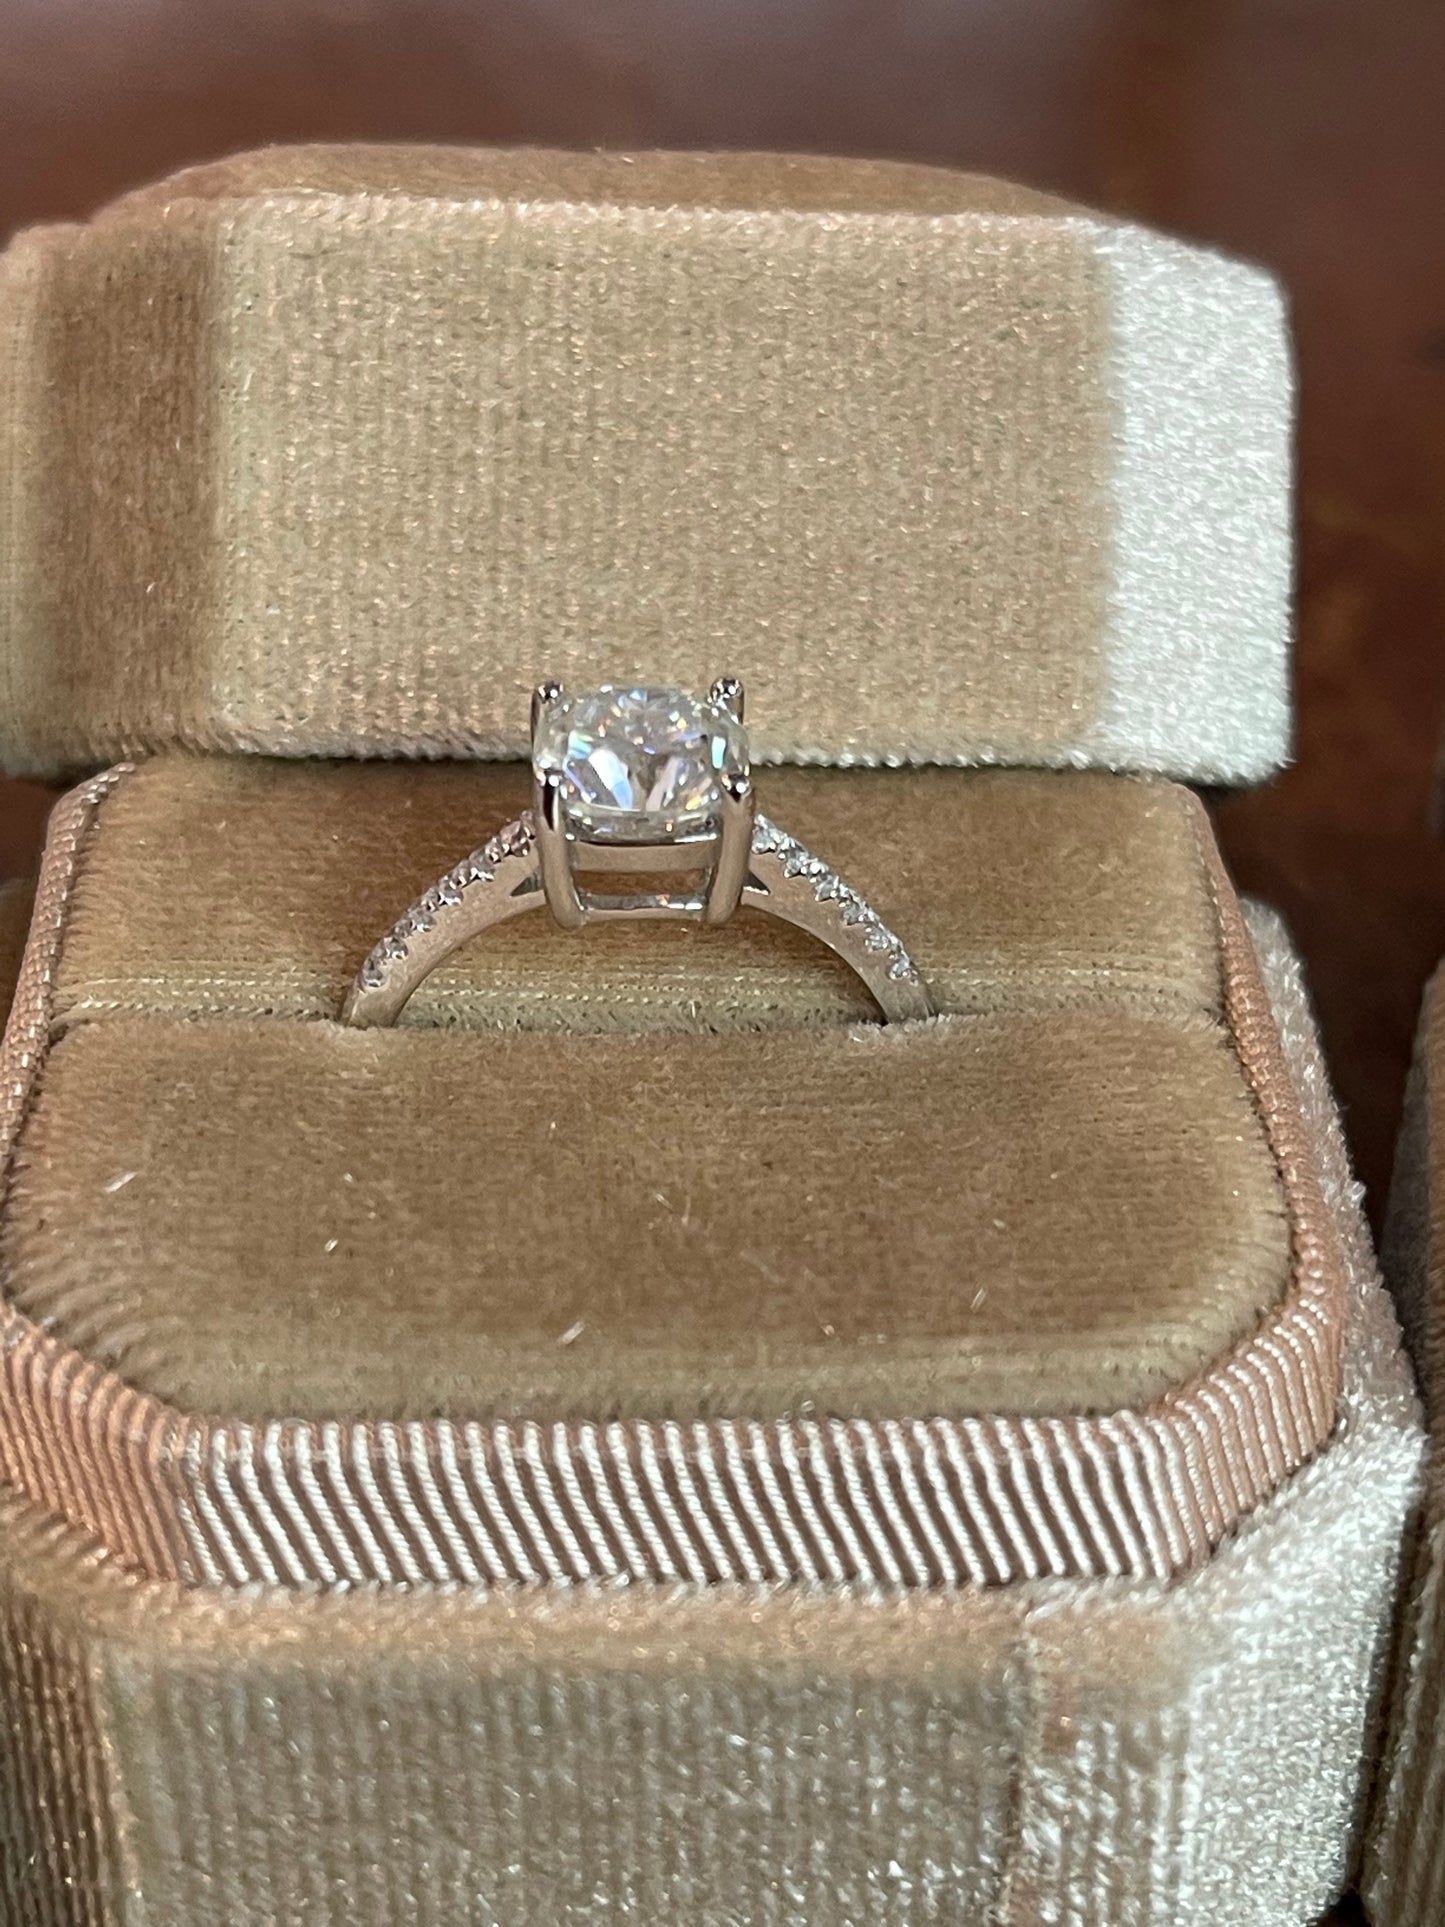 Amanda Engagement Ring